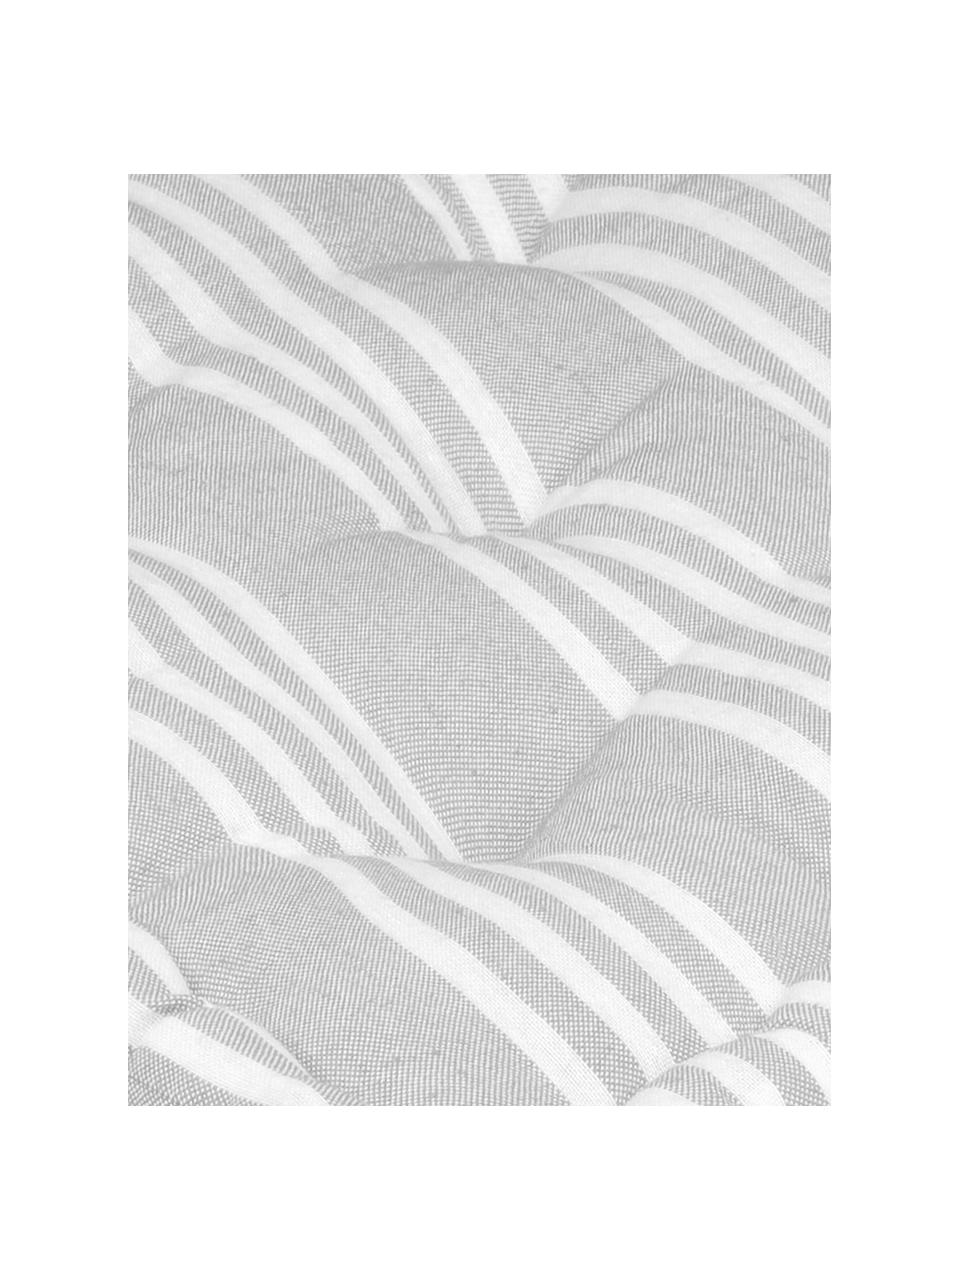 Mała poduszka podłogowa Mandelieu, Mieszanka bawełny, Jasnoszary, biały, S 45 x W 10 cm